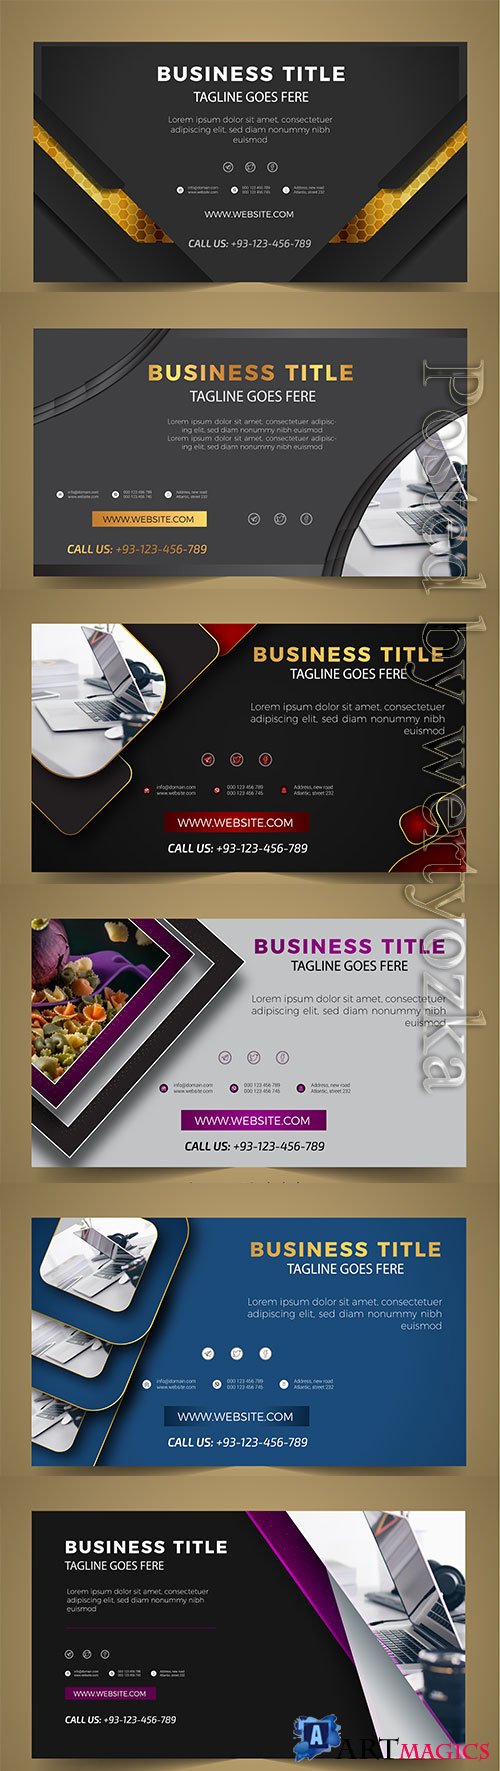 Modern business banner vector template design